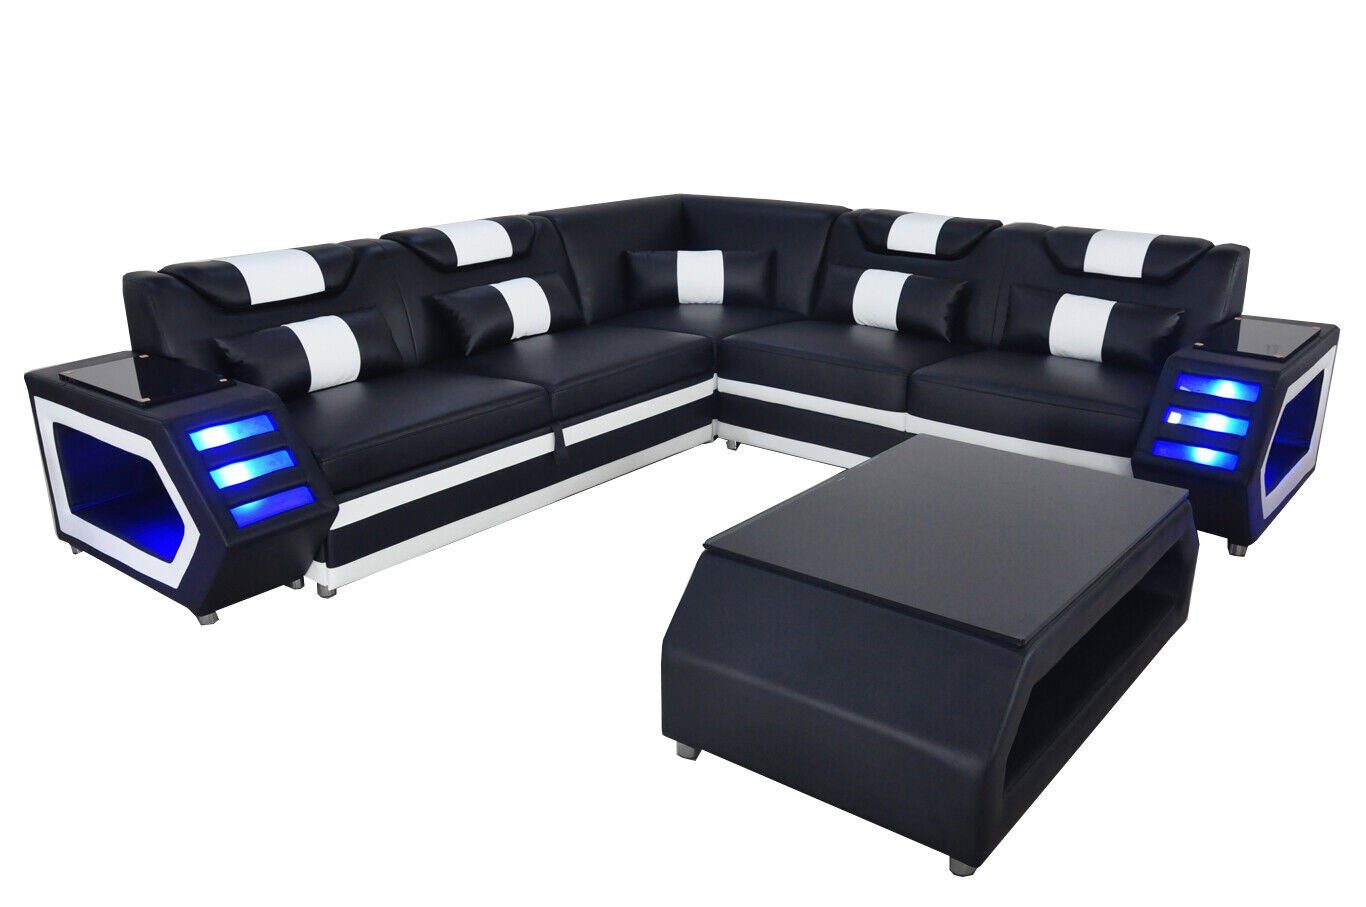 JVmoebel Ecksofa Komplett Set Garnitur Eckcouch Ecksofa Couch Eckgarnitur+Tisch+USB Schwarz/Weiß